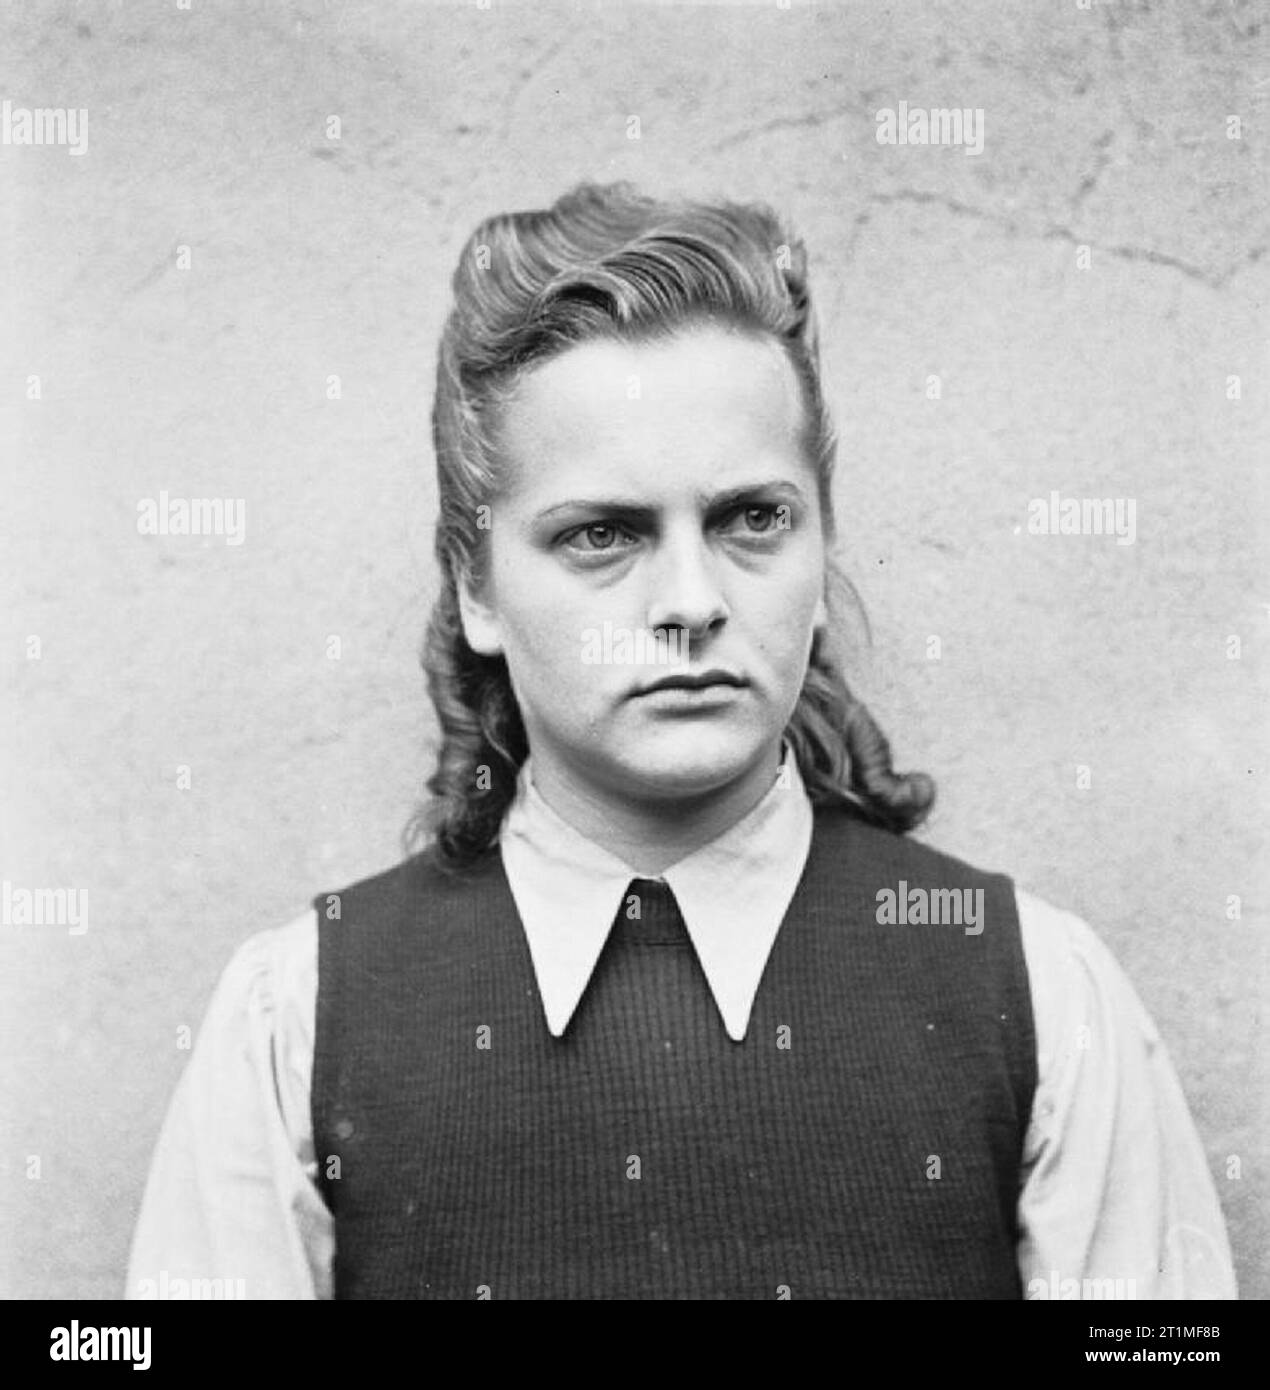 Die Befreiung der Konzentrationslager Bergen Belsen 1945 - Porträts von Belsen Wachen in Celle auf ihren Prozess warten, August 1945 Irma Grese, der verantwortlich für den Tod Zellen wurde: zum Tode verurteilt. Stockfoto